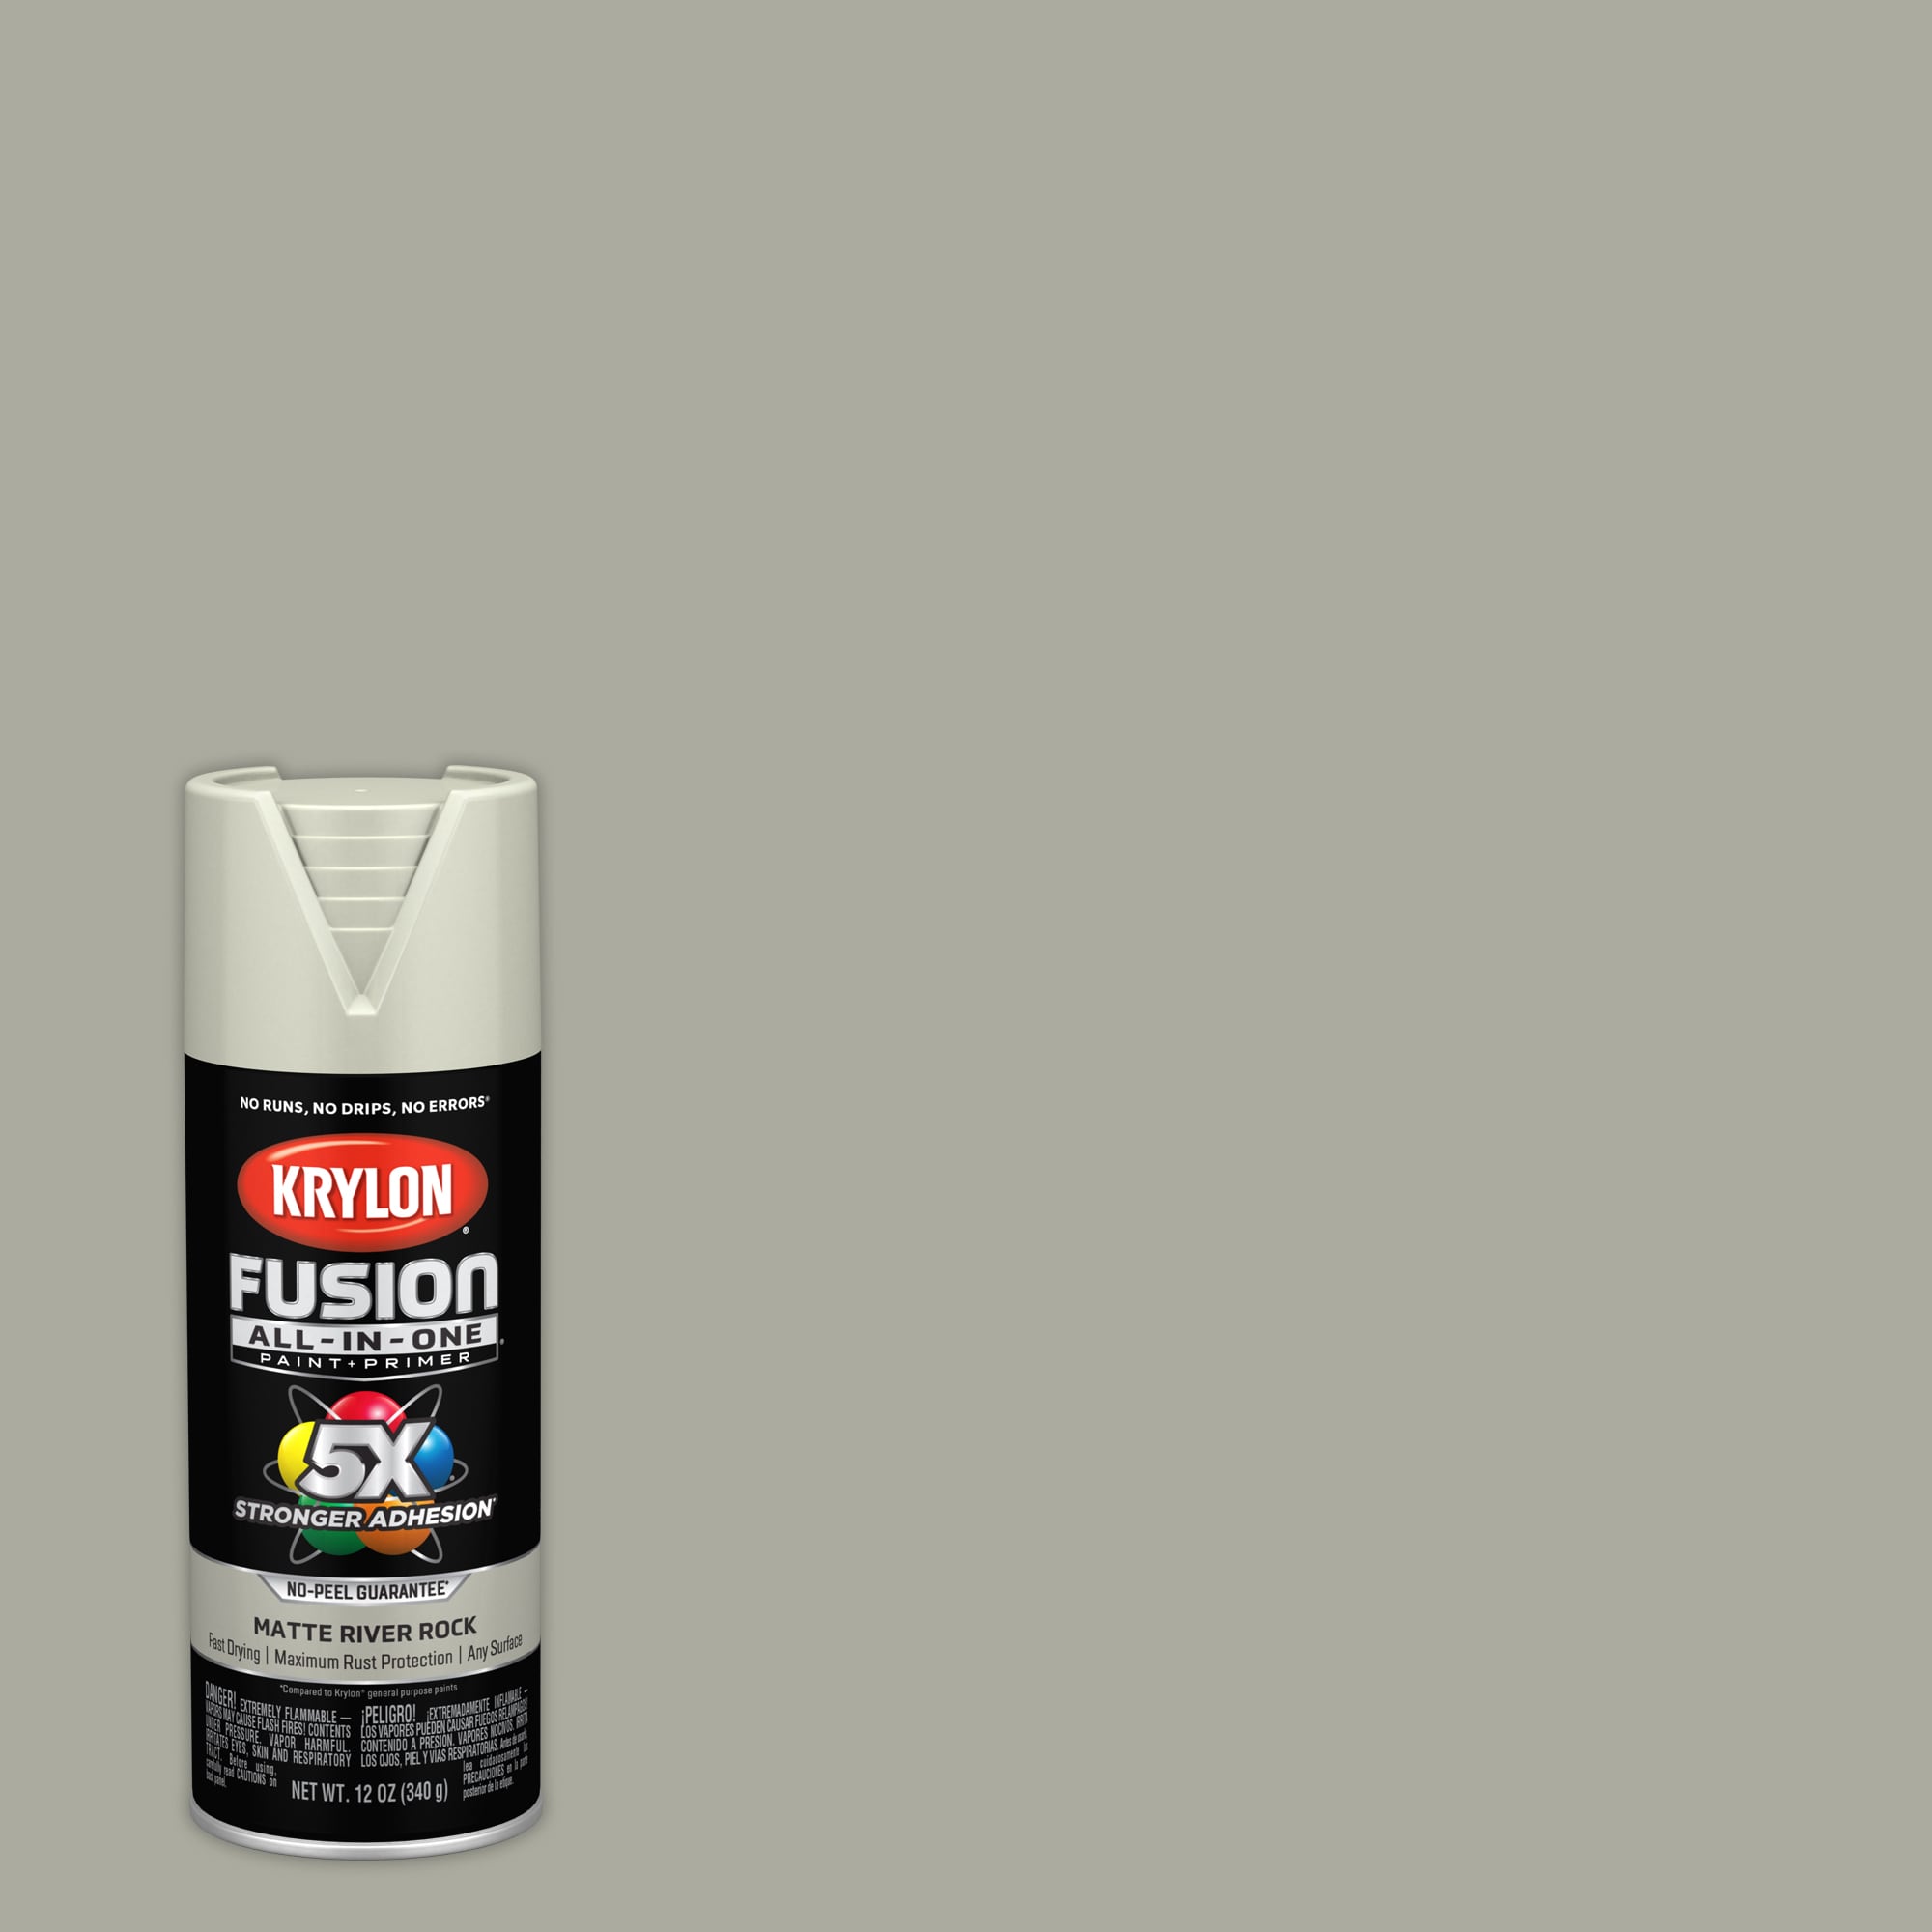 6 Spray NOZZLES for Krylon Crystal Clear Acrylic Coating Aerosol